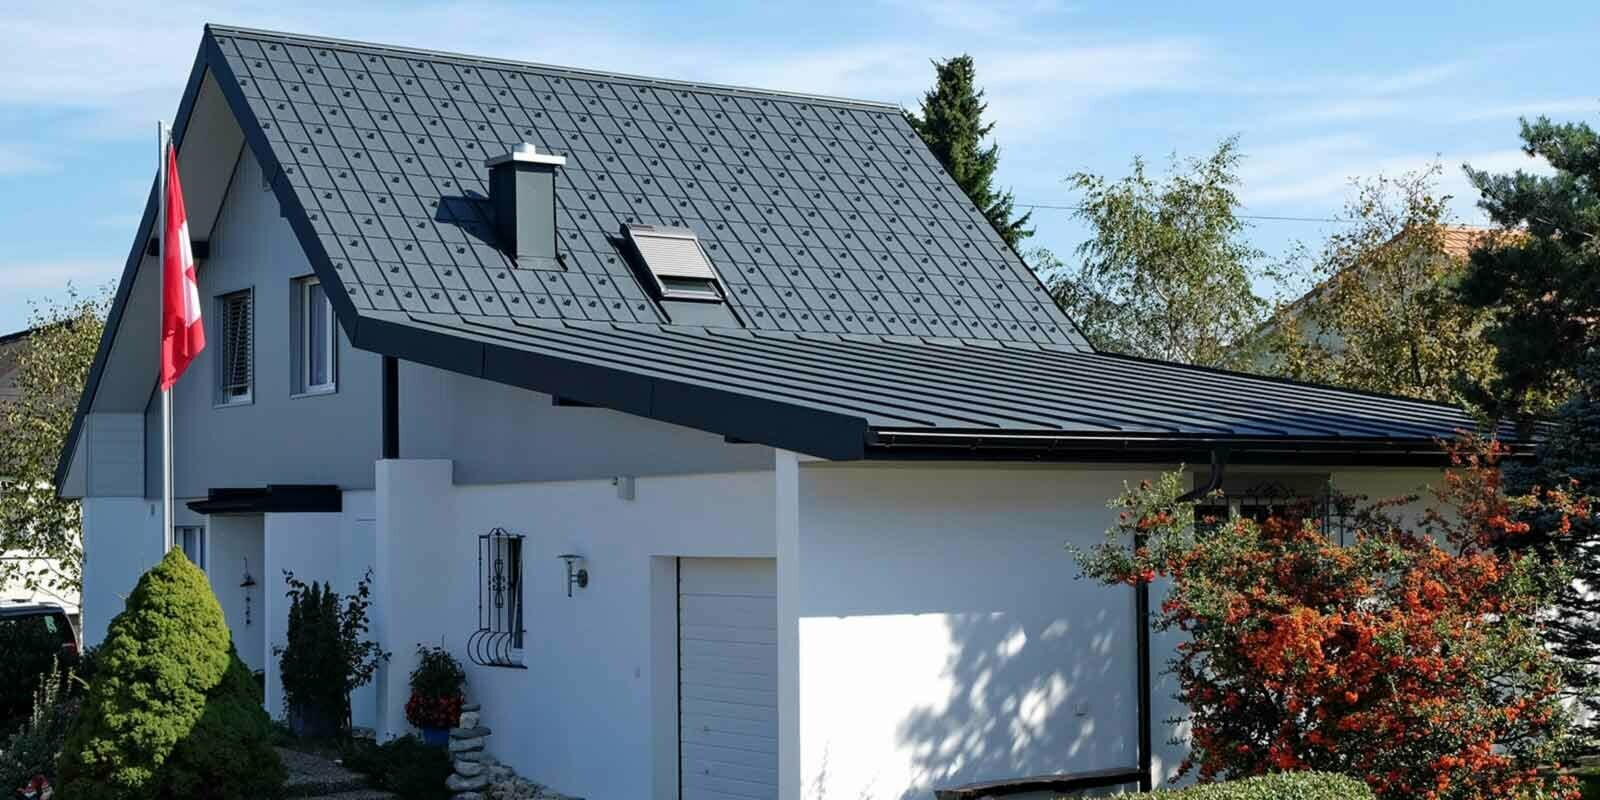 Maison avec garage après la rénovation de toiture à l’aide de tuiles PREFA couleur anthracite